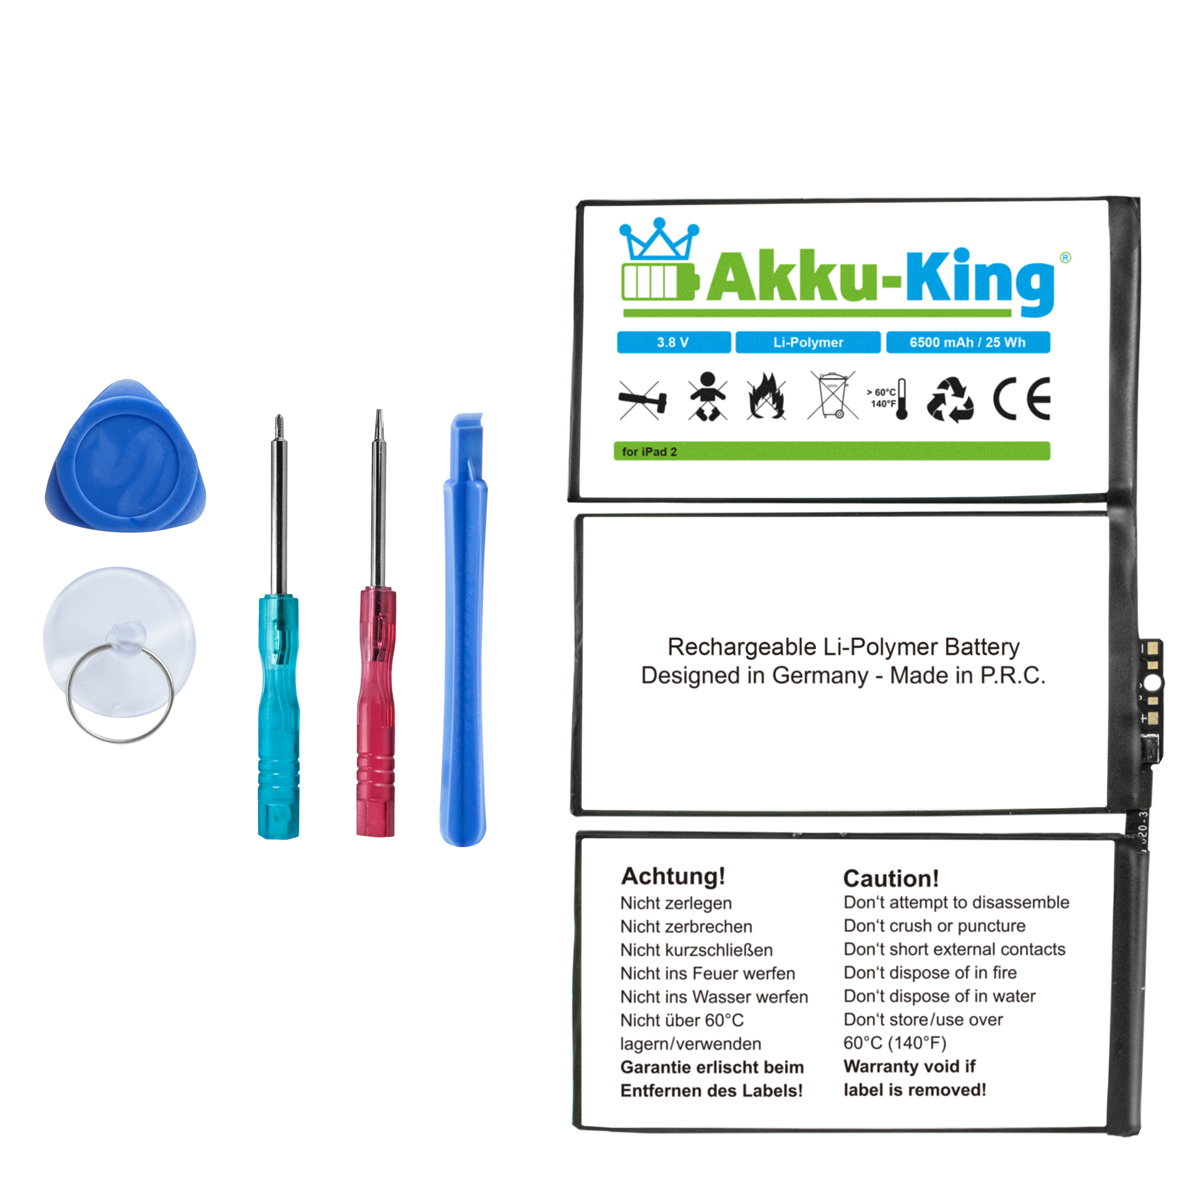 Apple Akku 3.8 Volt, kompatibel 616-0559 mit AKKU-KING 6500mAh Li-Polymer Geräte-Akku,